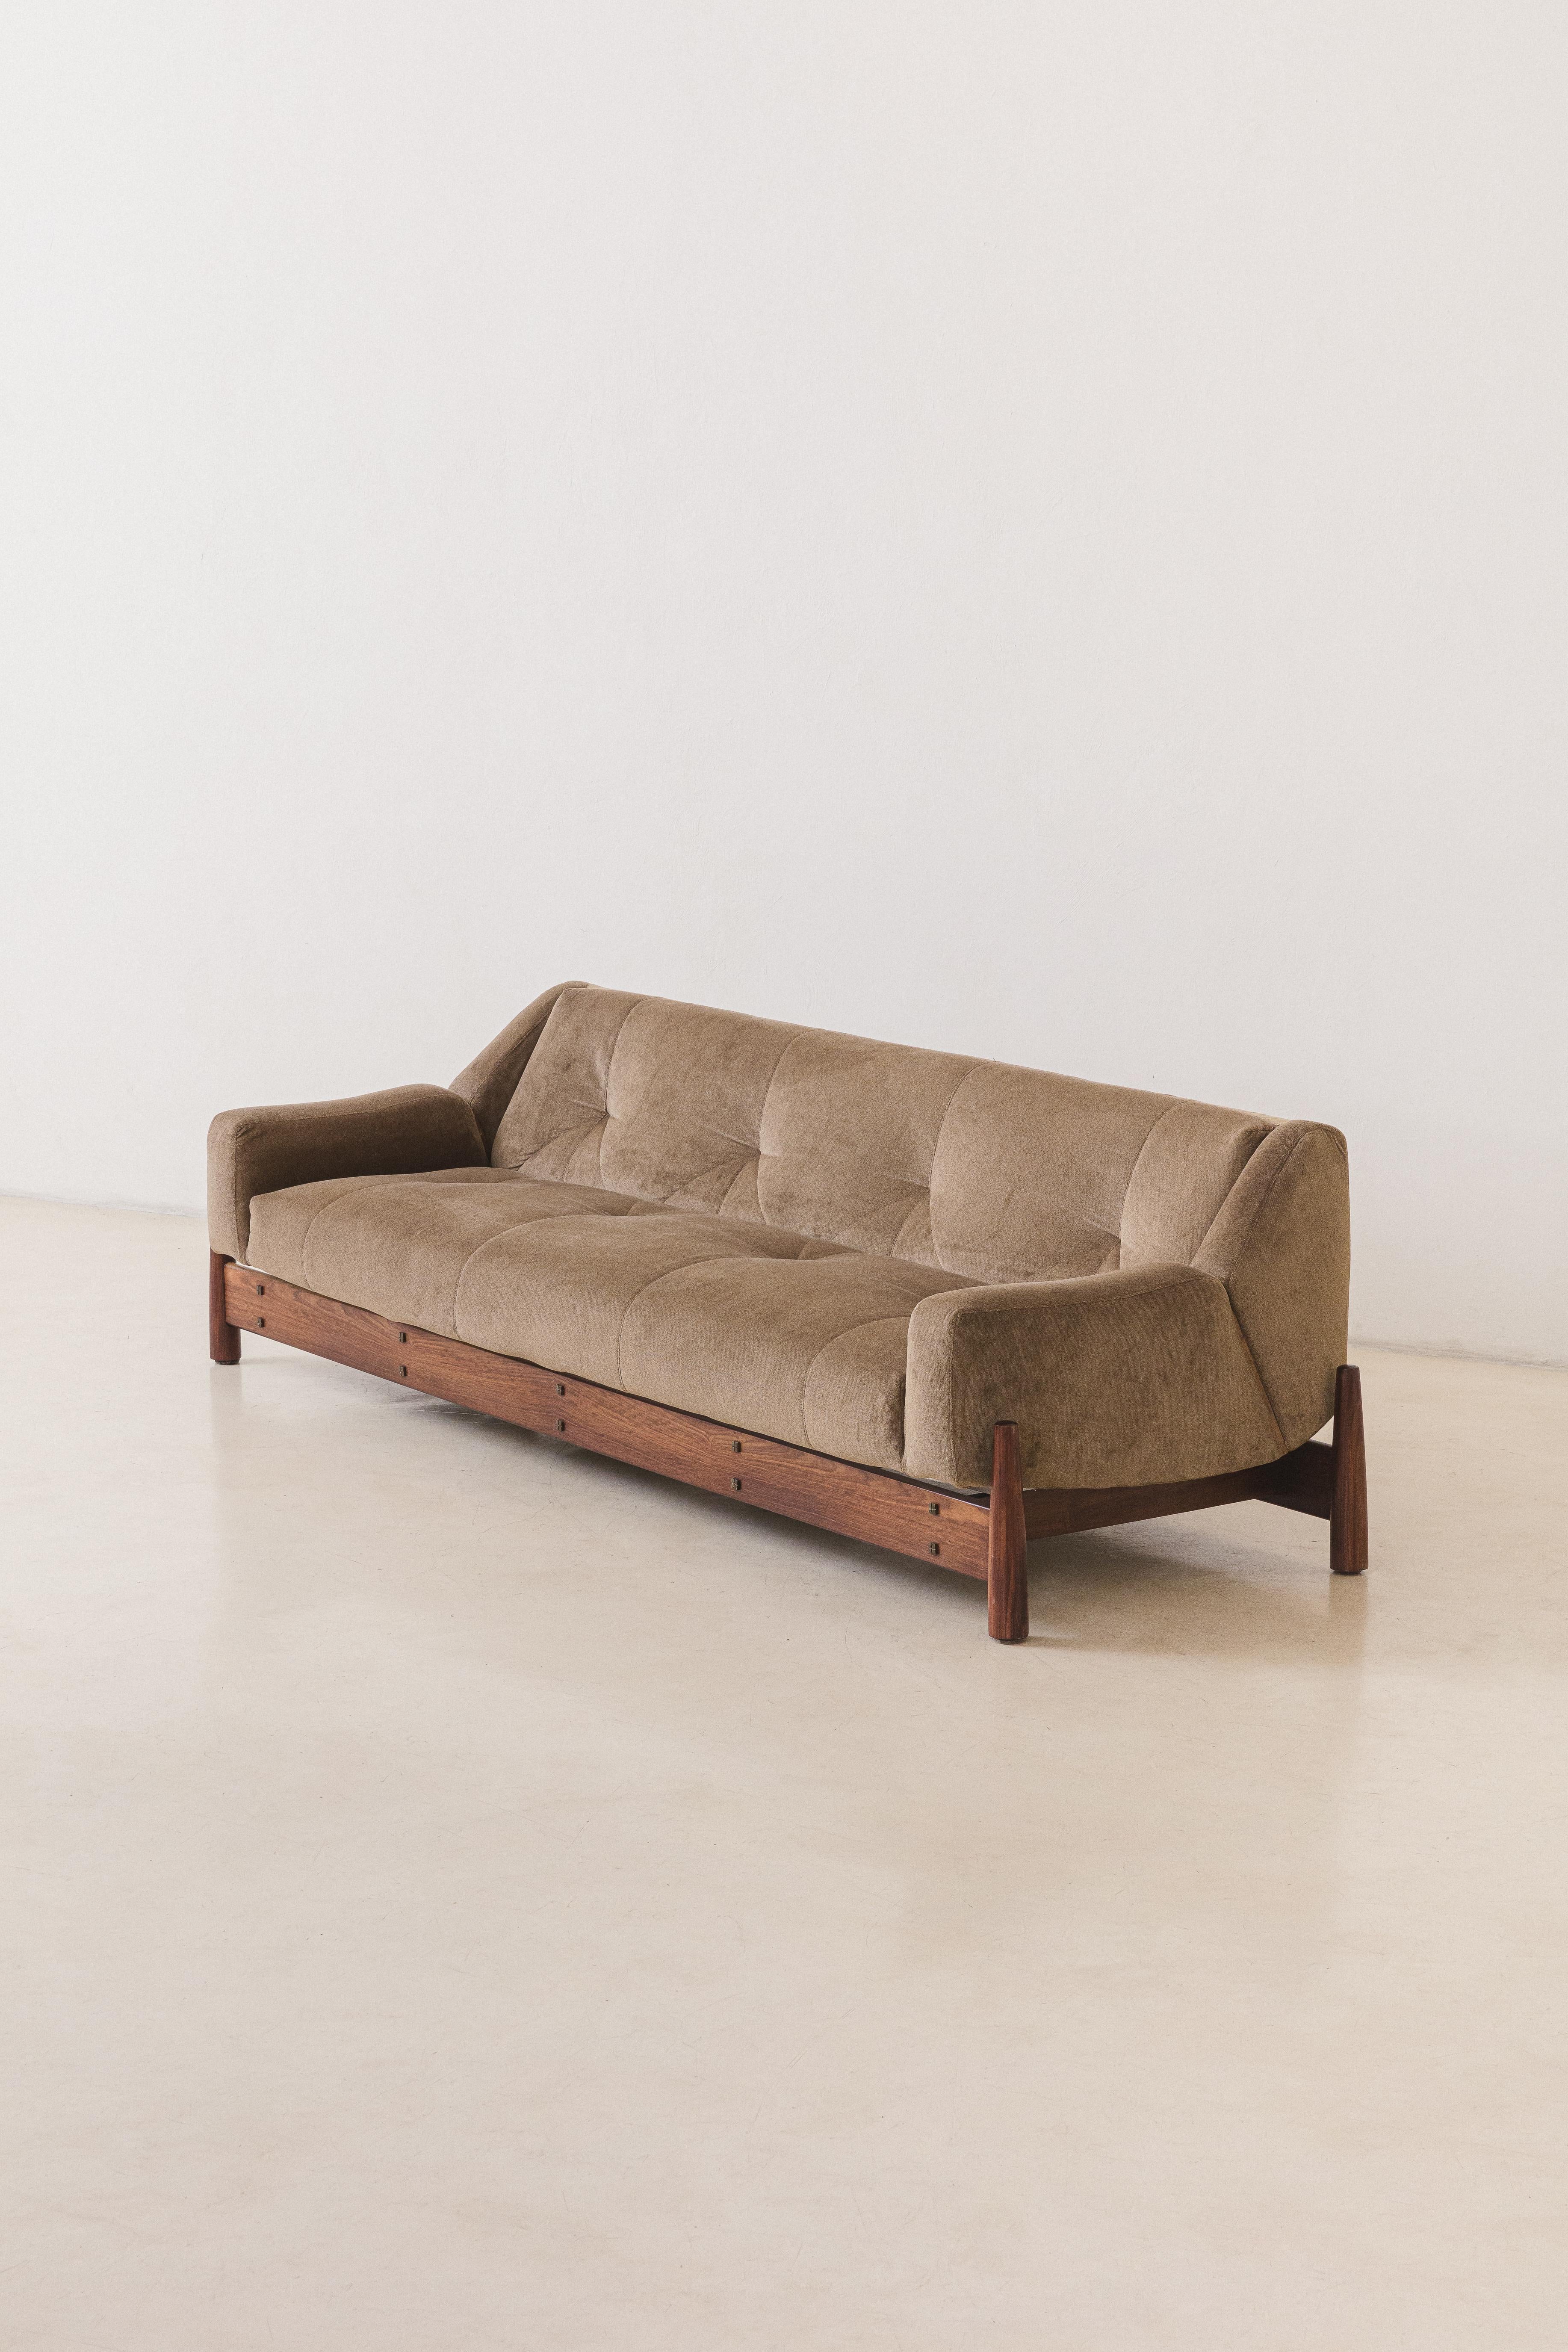 Ce canapé Imbuia a été fabriqué dans les années 1960 par la société brésilienne Móveis Cimo, pionnière de l'industrialisation du mobilier brésilien.

Le canapé Cimo est très charmeur, présentant l'assise et le dossier comme une seule pièce qui